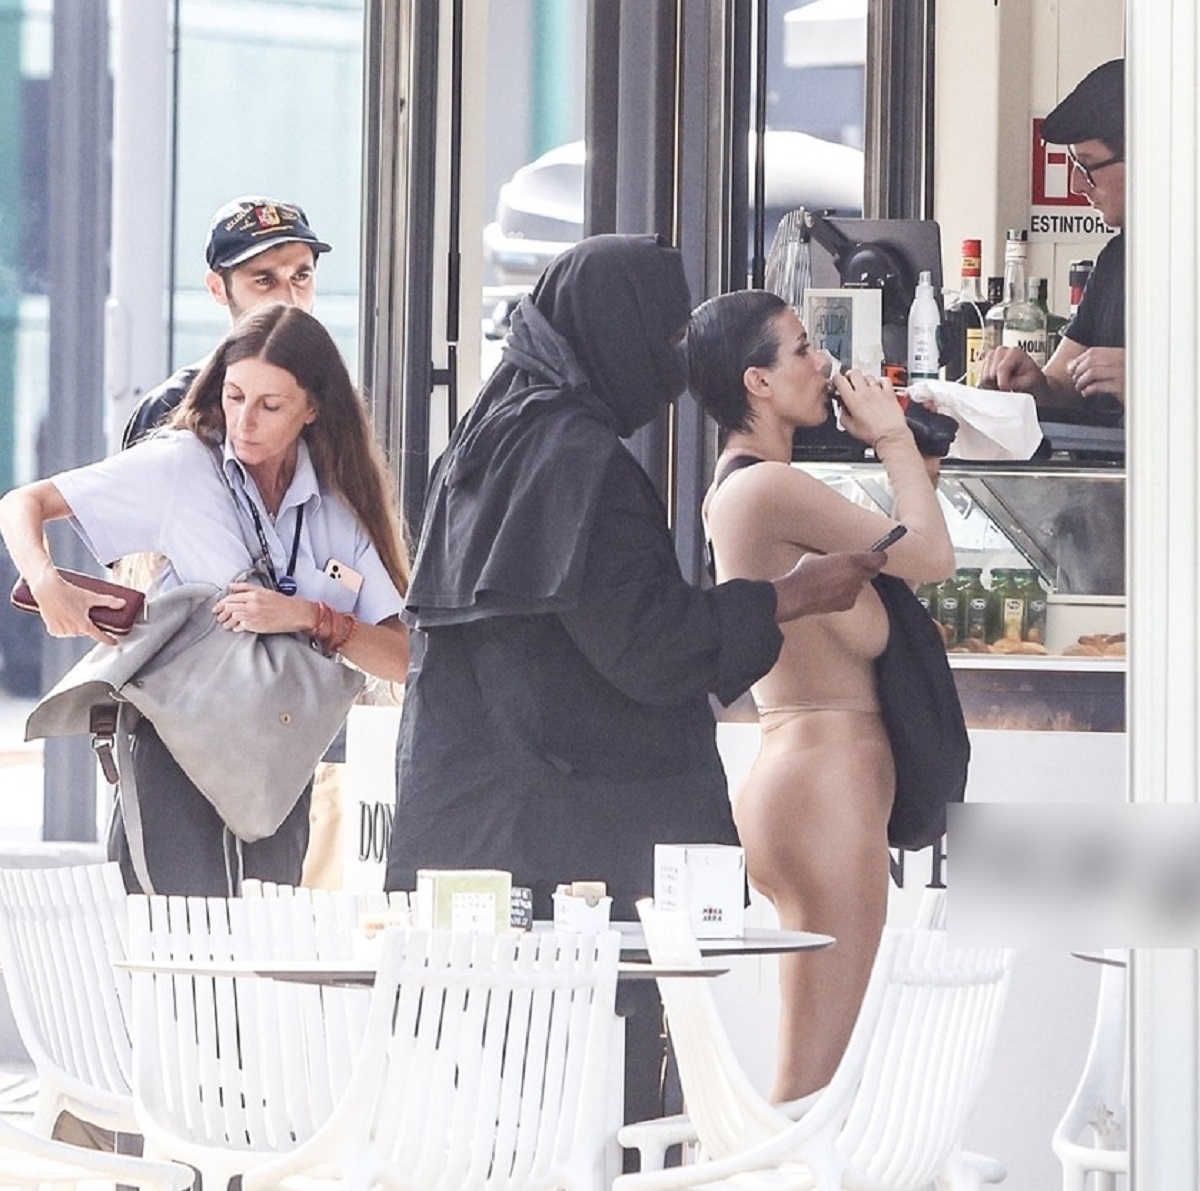 Bianca Censori și Kanye West în timp ce își cumpără băuturi de la un bar din Italia